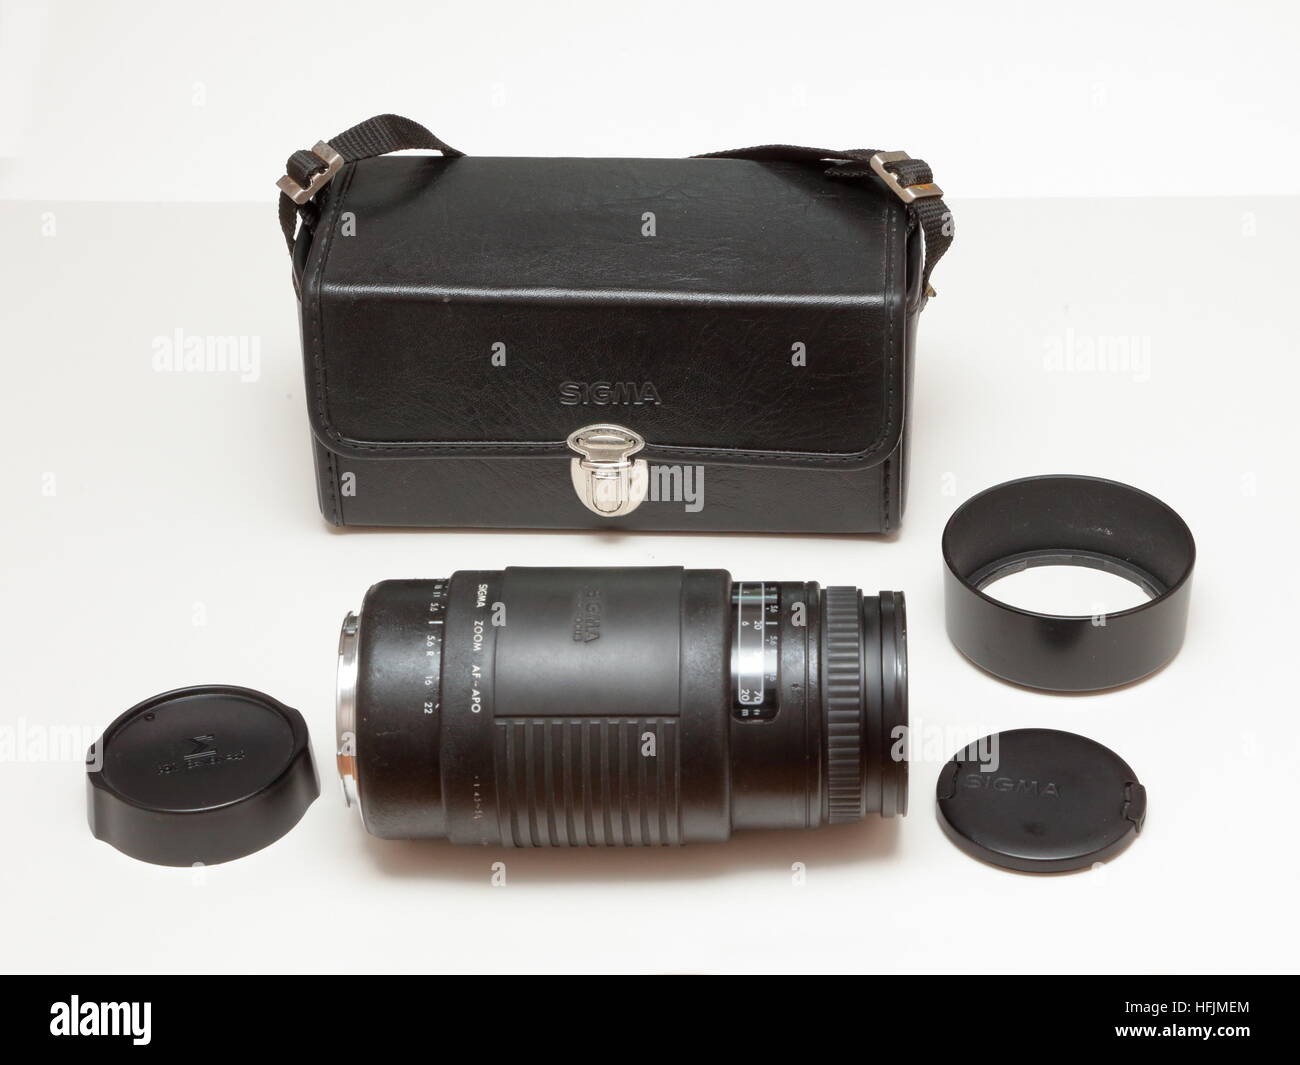 Sigma 75-300 mm teleobiettivo con zoom ideale per film SLR Fotocamera,  custodia, cappa e cappucci lente. Canon EOS raccordo dal 1990s Foto stock -  Alamy